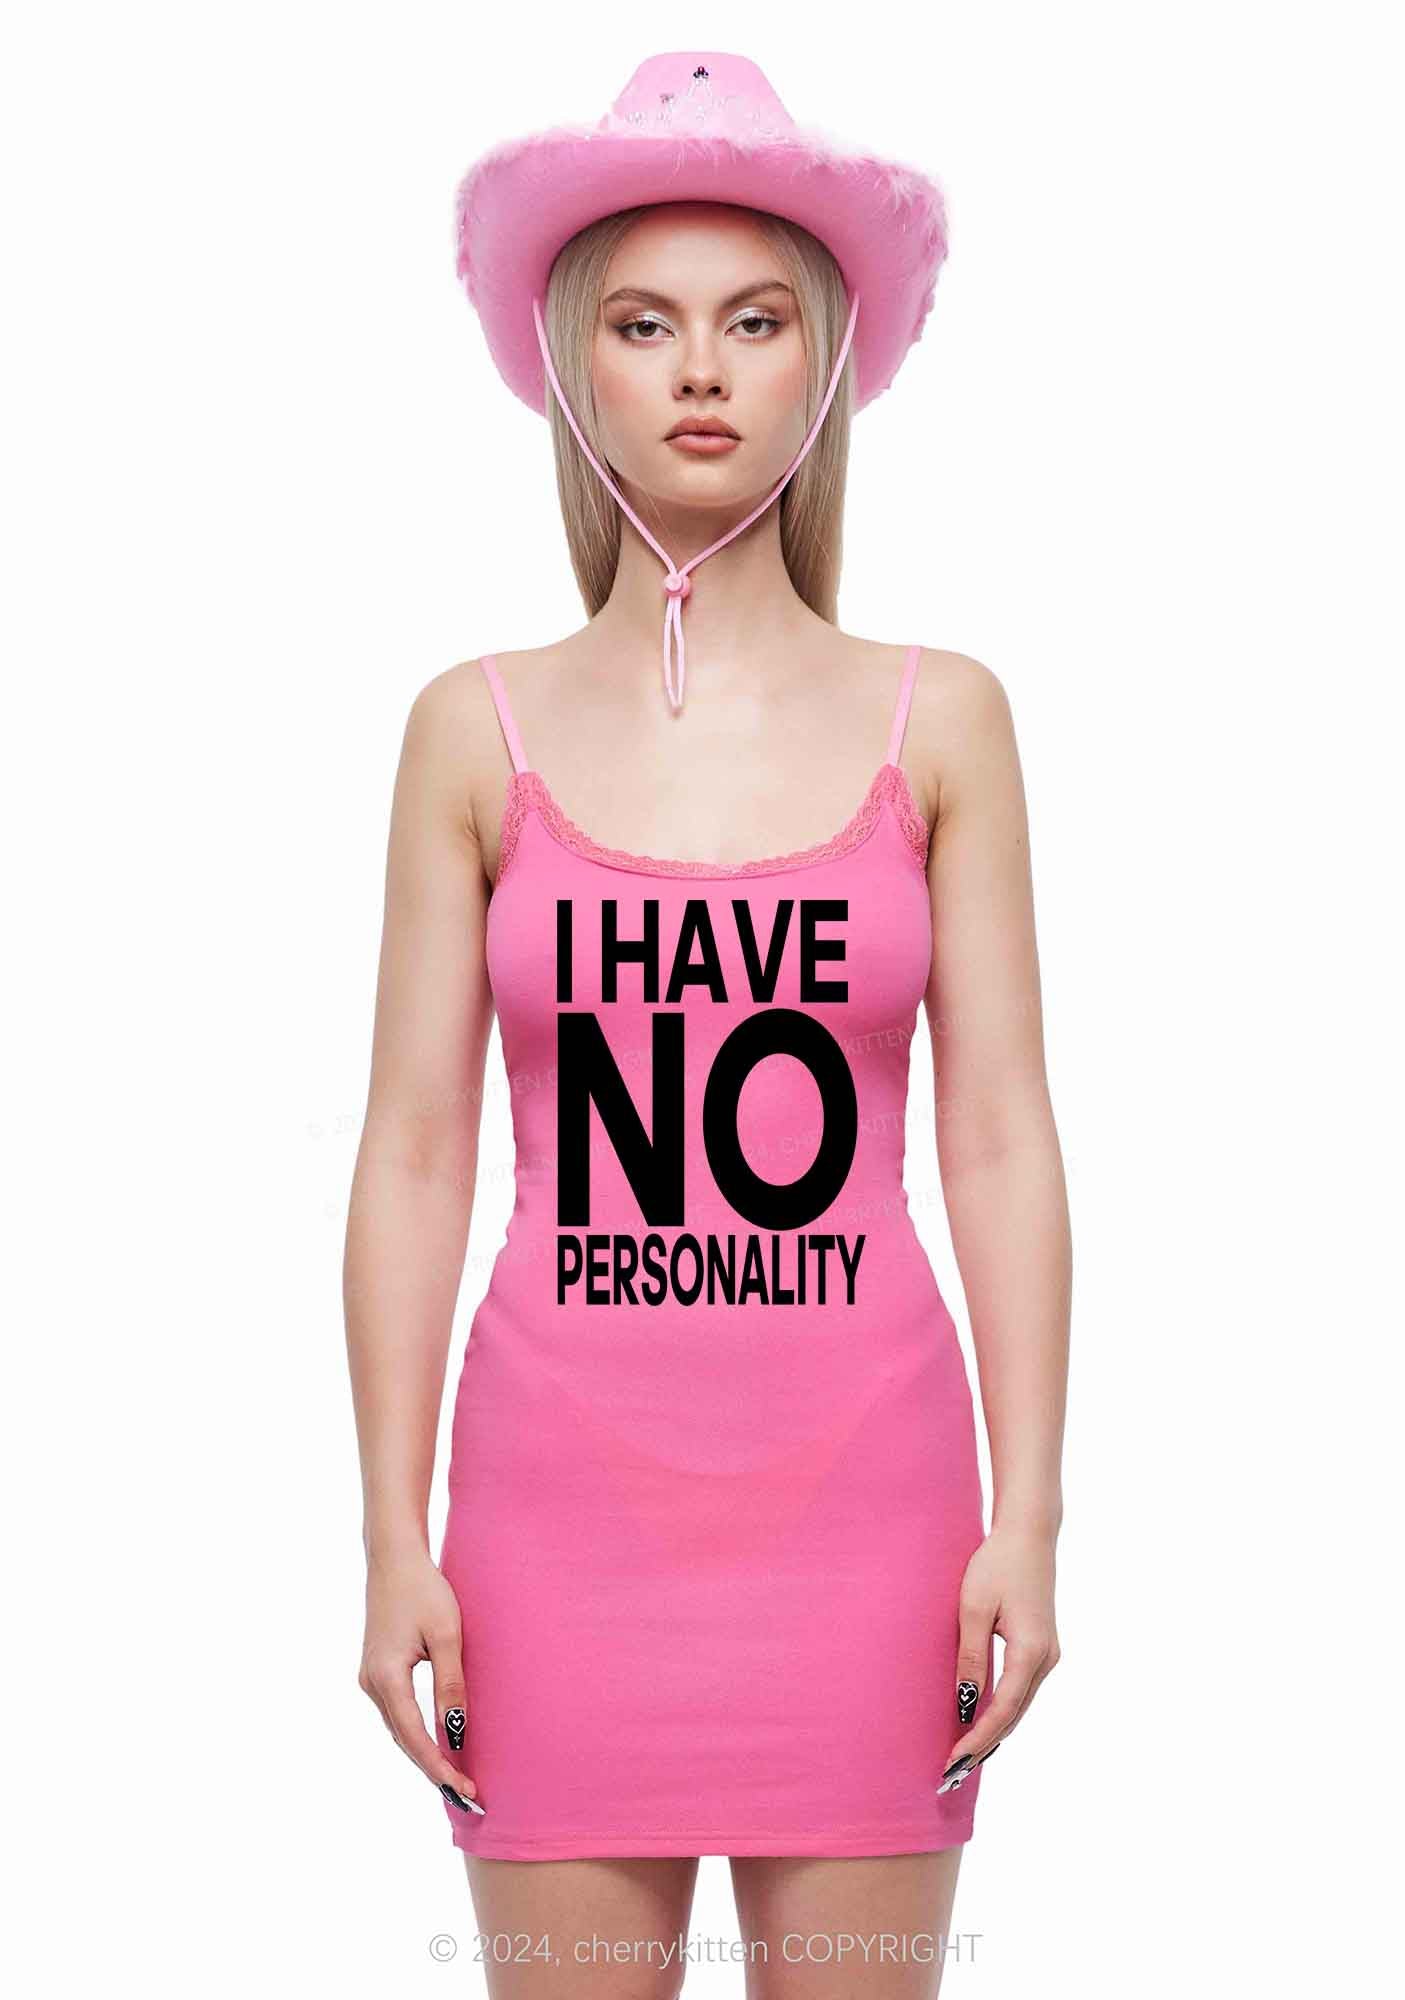 No Personality Y2K Lace Slip Dress Cherrykitten